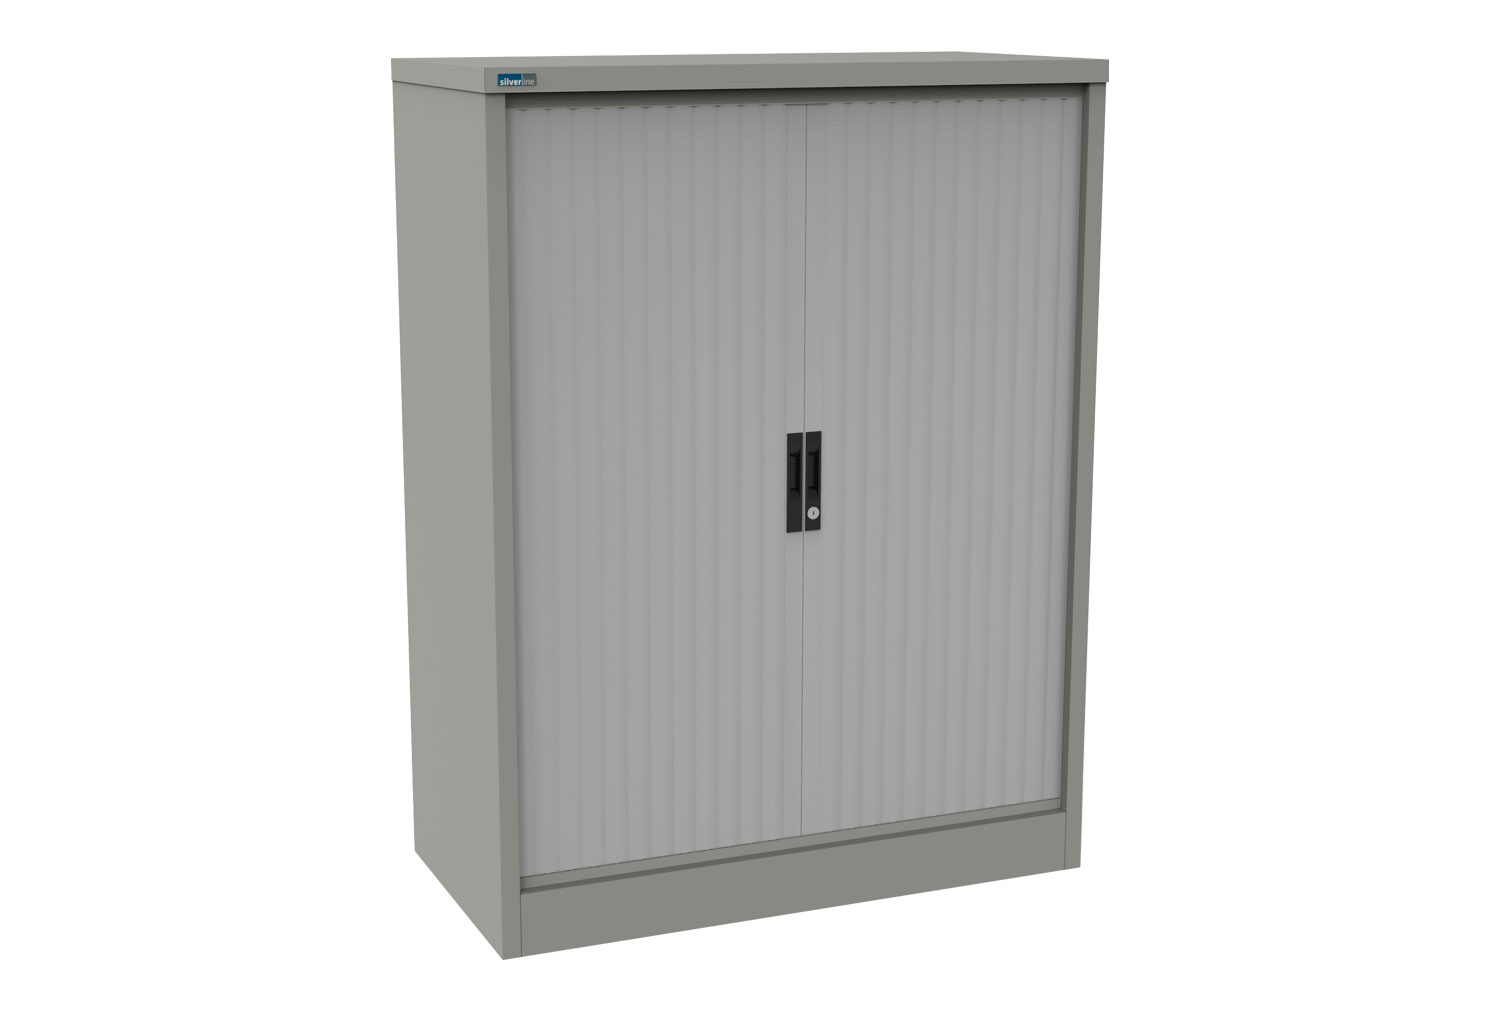 Silverline Kontrax Side Tambour Door Office Cupboards 80cm Wide, 80wx51dx132h (cm), Goose Grey Body, Light Grey